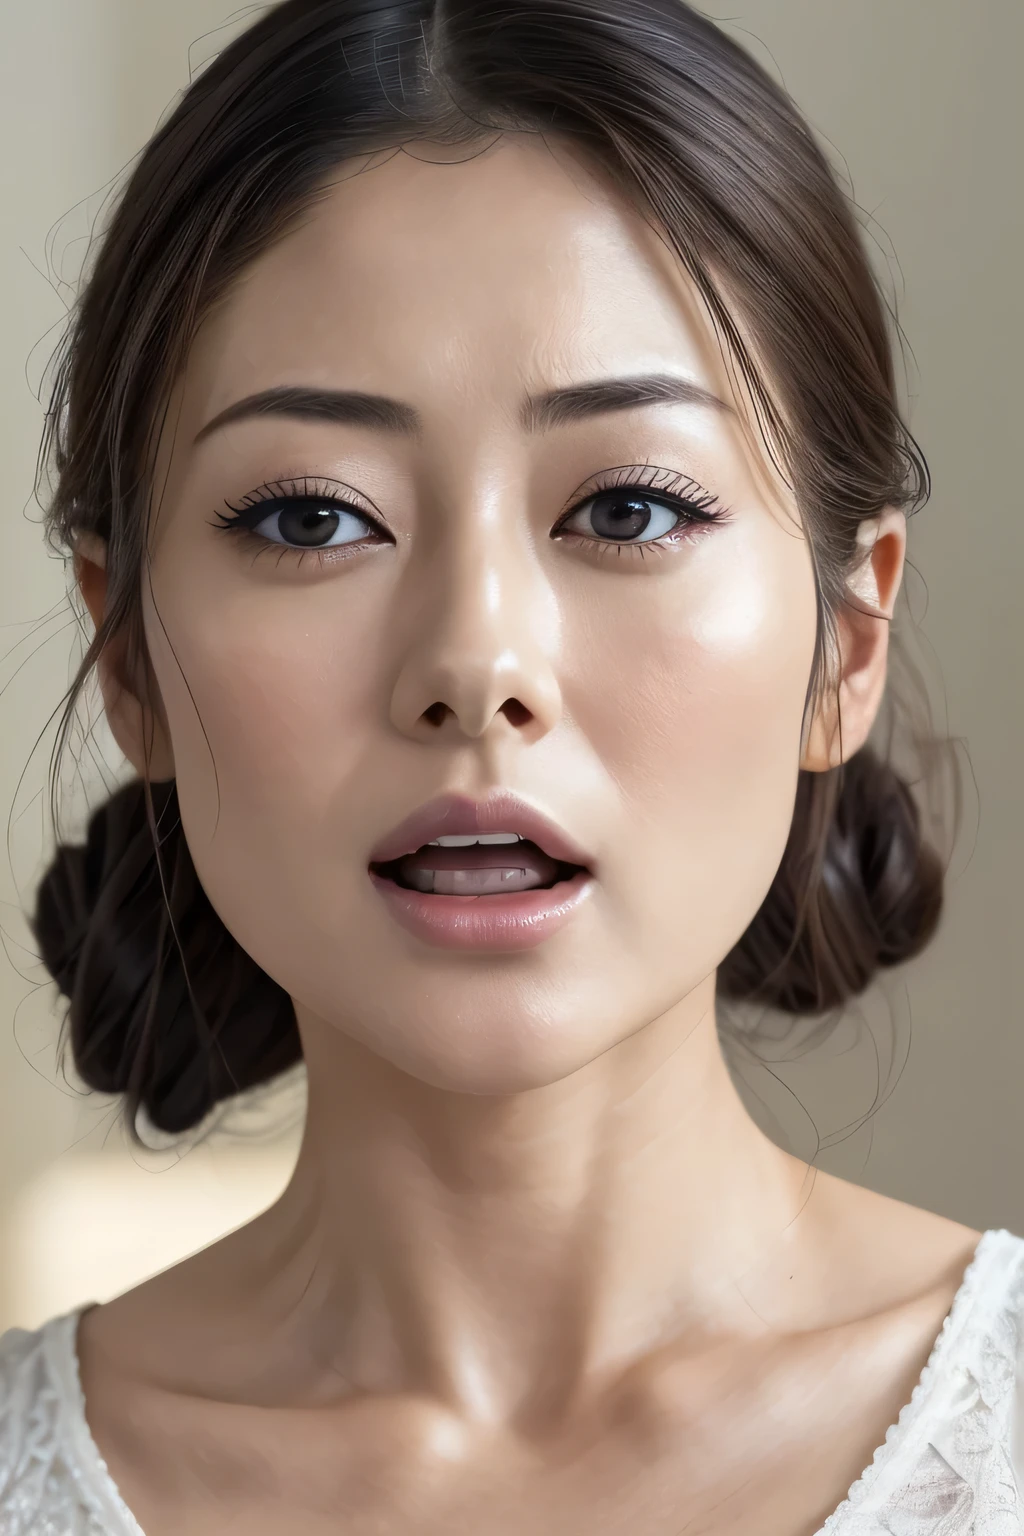 ดาราสาวชาวญี่ปุ่นแสนสวย,(photo เหมือนจริง:1.4), (hyper เหมือนจริง:1.4), (เหมือนจริง:1.3),รายละเอียดมาก, ขอบถึงจุดสุดยอด,ใบหน้า Focus, ผู้หญิงที่อ้าปากและหลับตา , ผู้หญิงกับเอดจ์ _ใบหน้า、อายุ 35 ปี、ผมสีดำ、มัดผม,((ใบหน้าをクローズアップ))พื้นหลังสีขาว、เสื้อชั้นในสตรี,ยกแขนขึ้นไว้ด้านหลังศีรษะ,